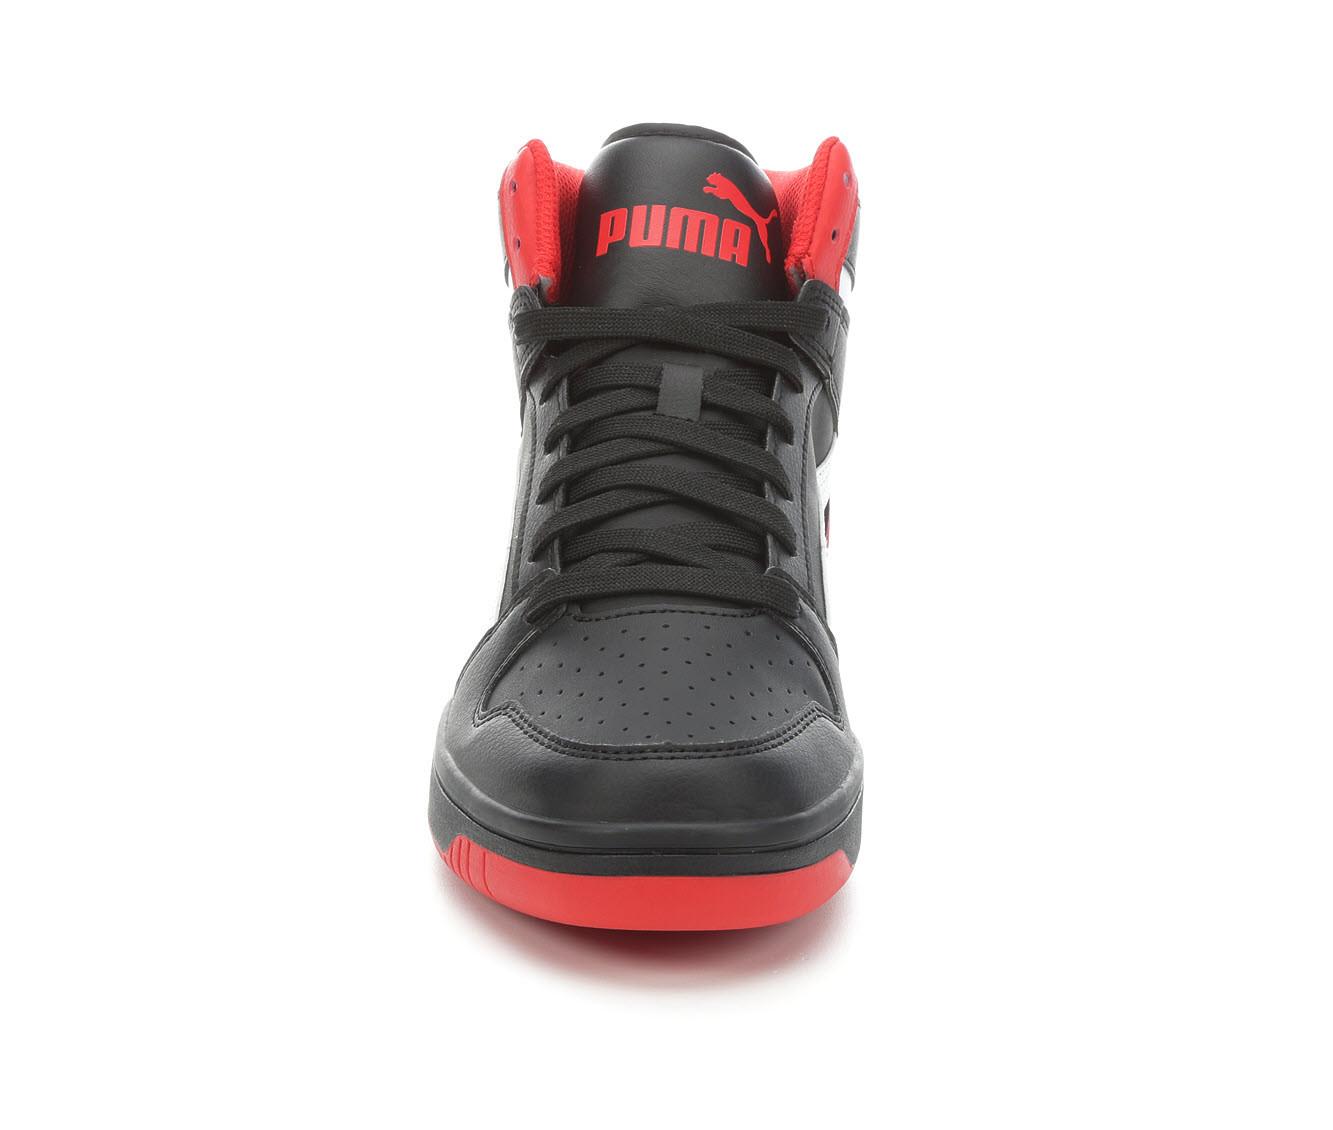 Men's Puma Rebound Layup SL Sneakers